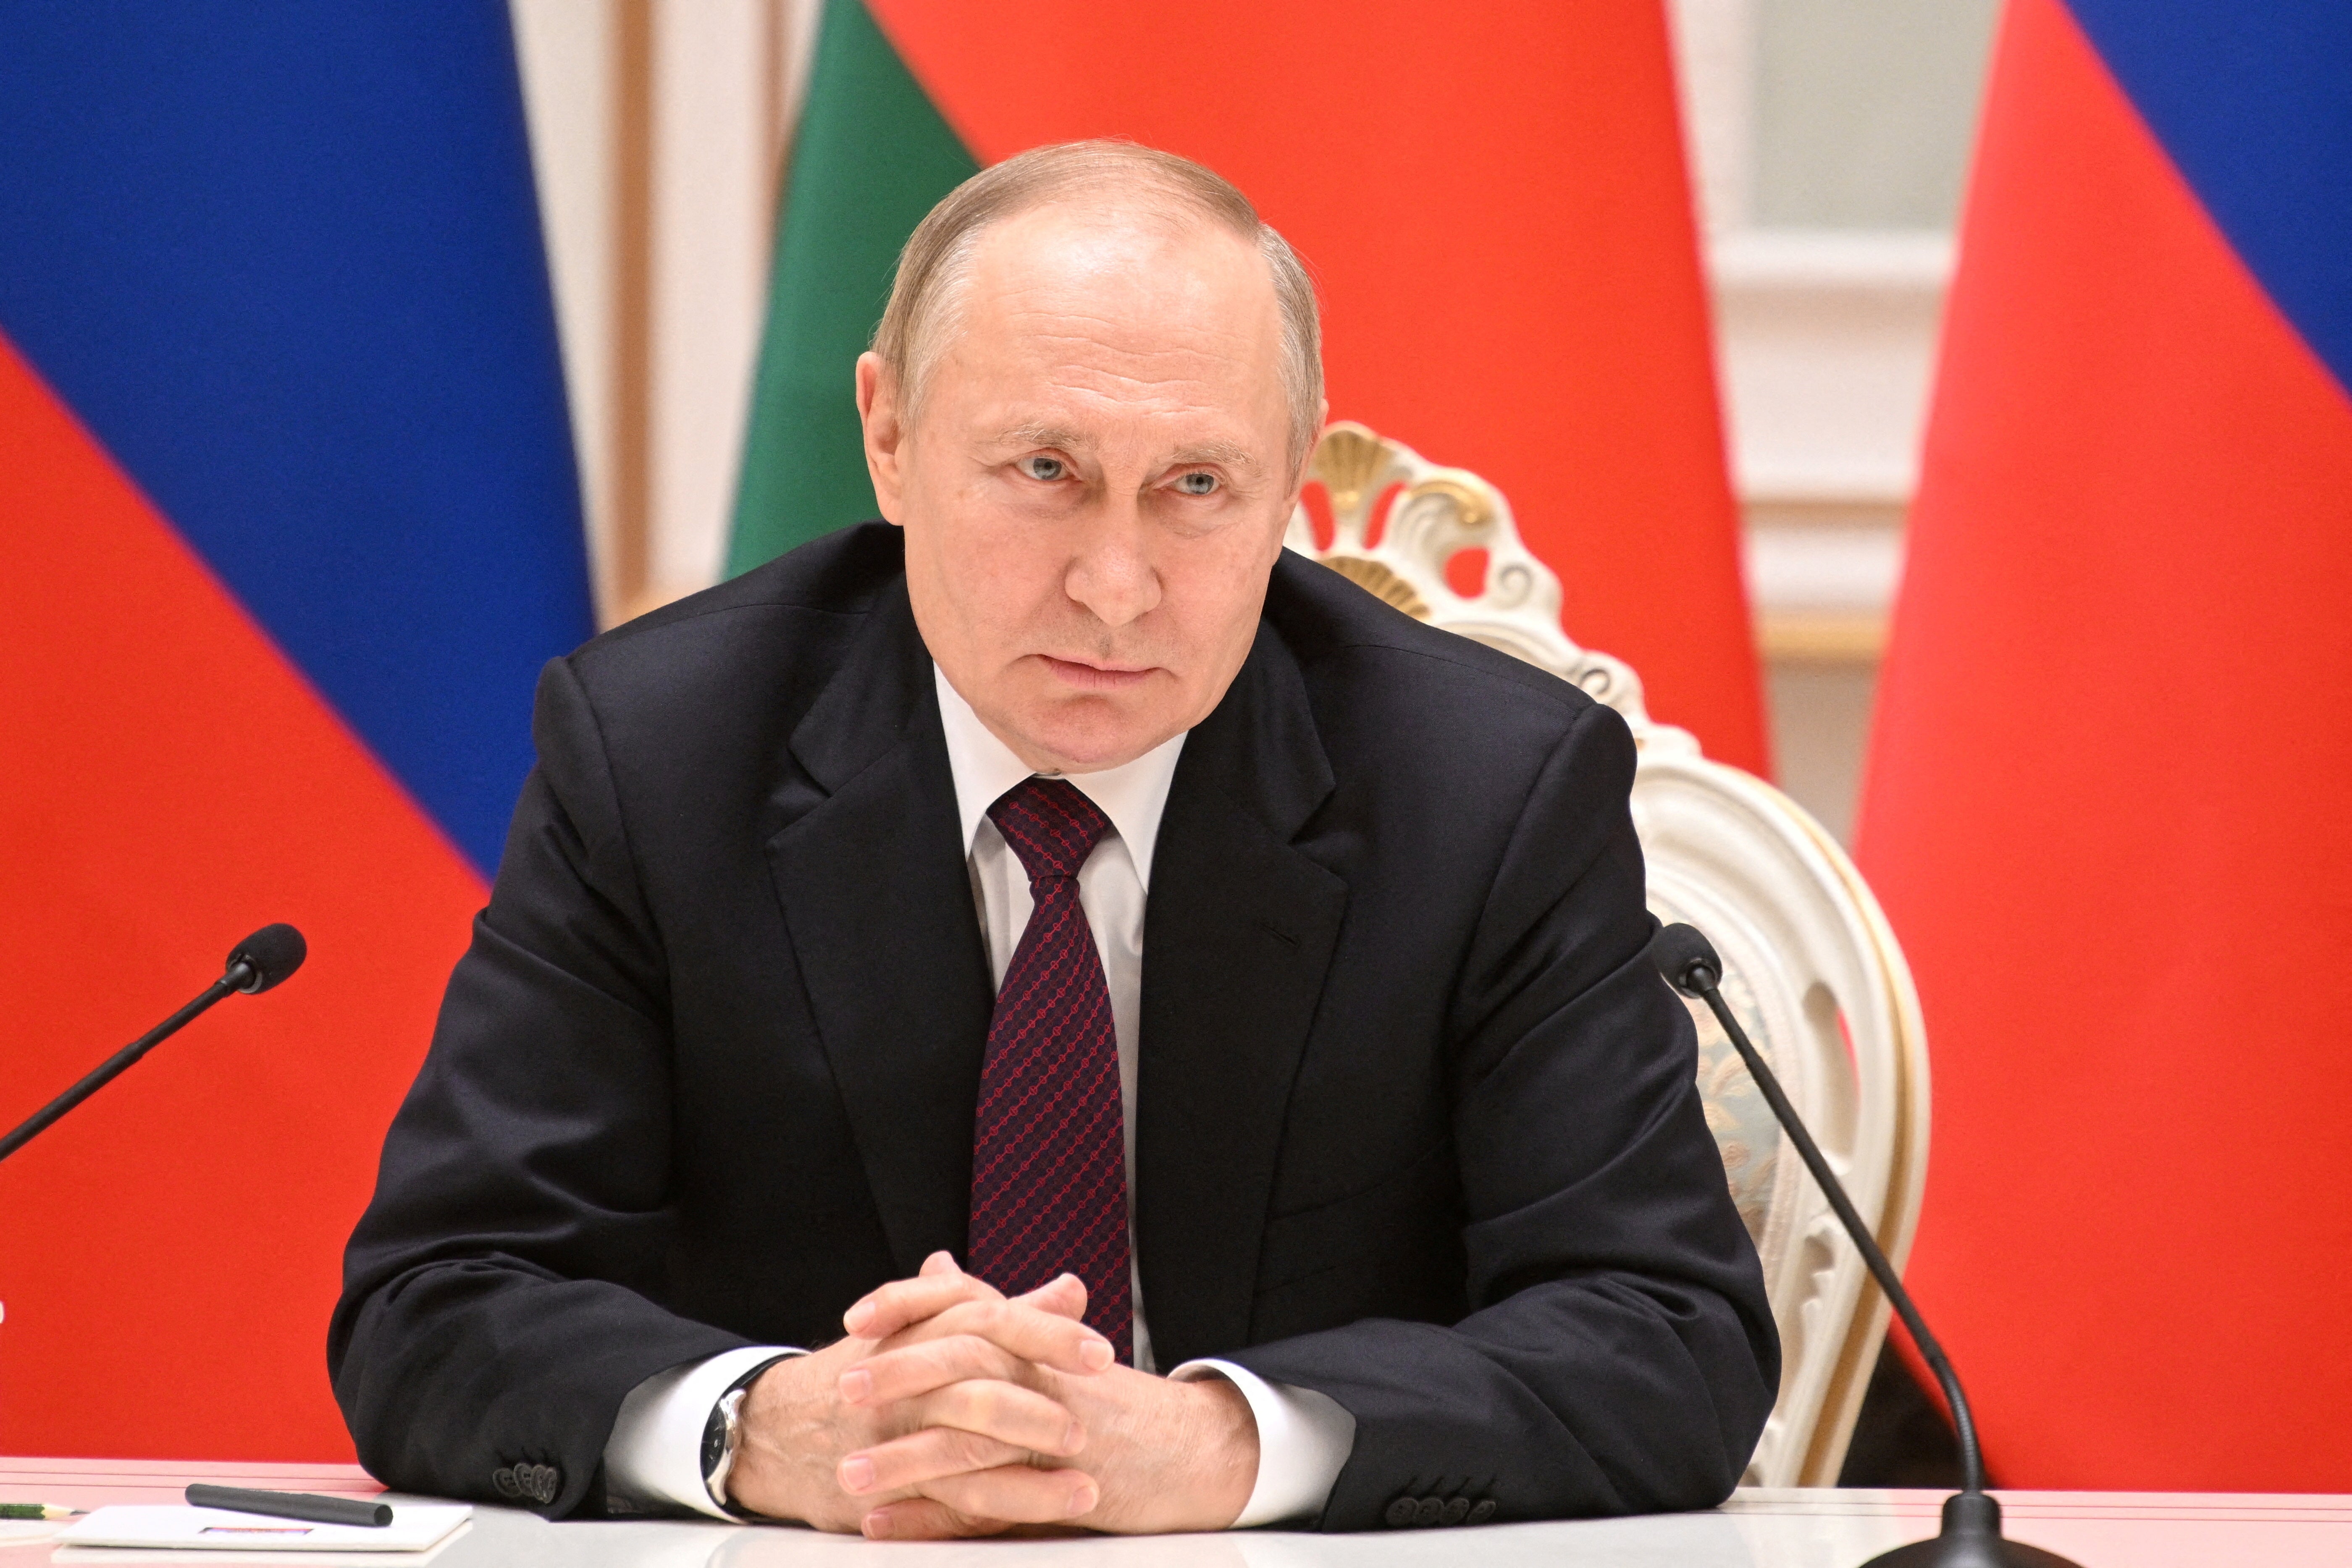 Putin in Minsk on Monday